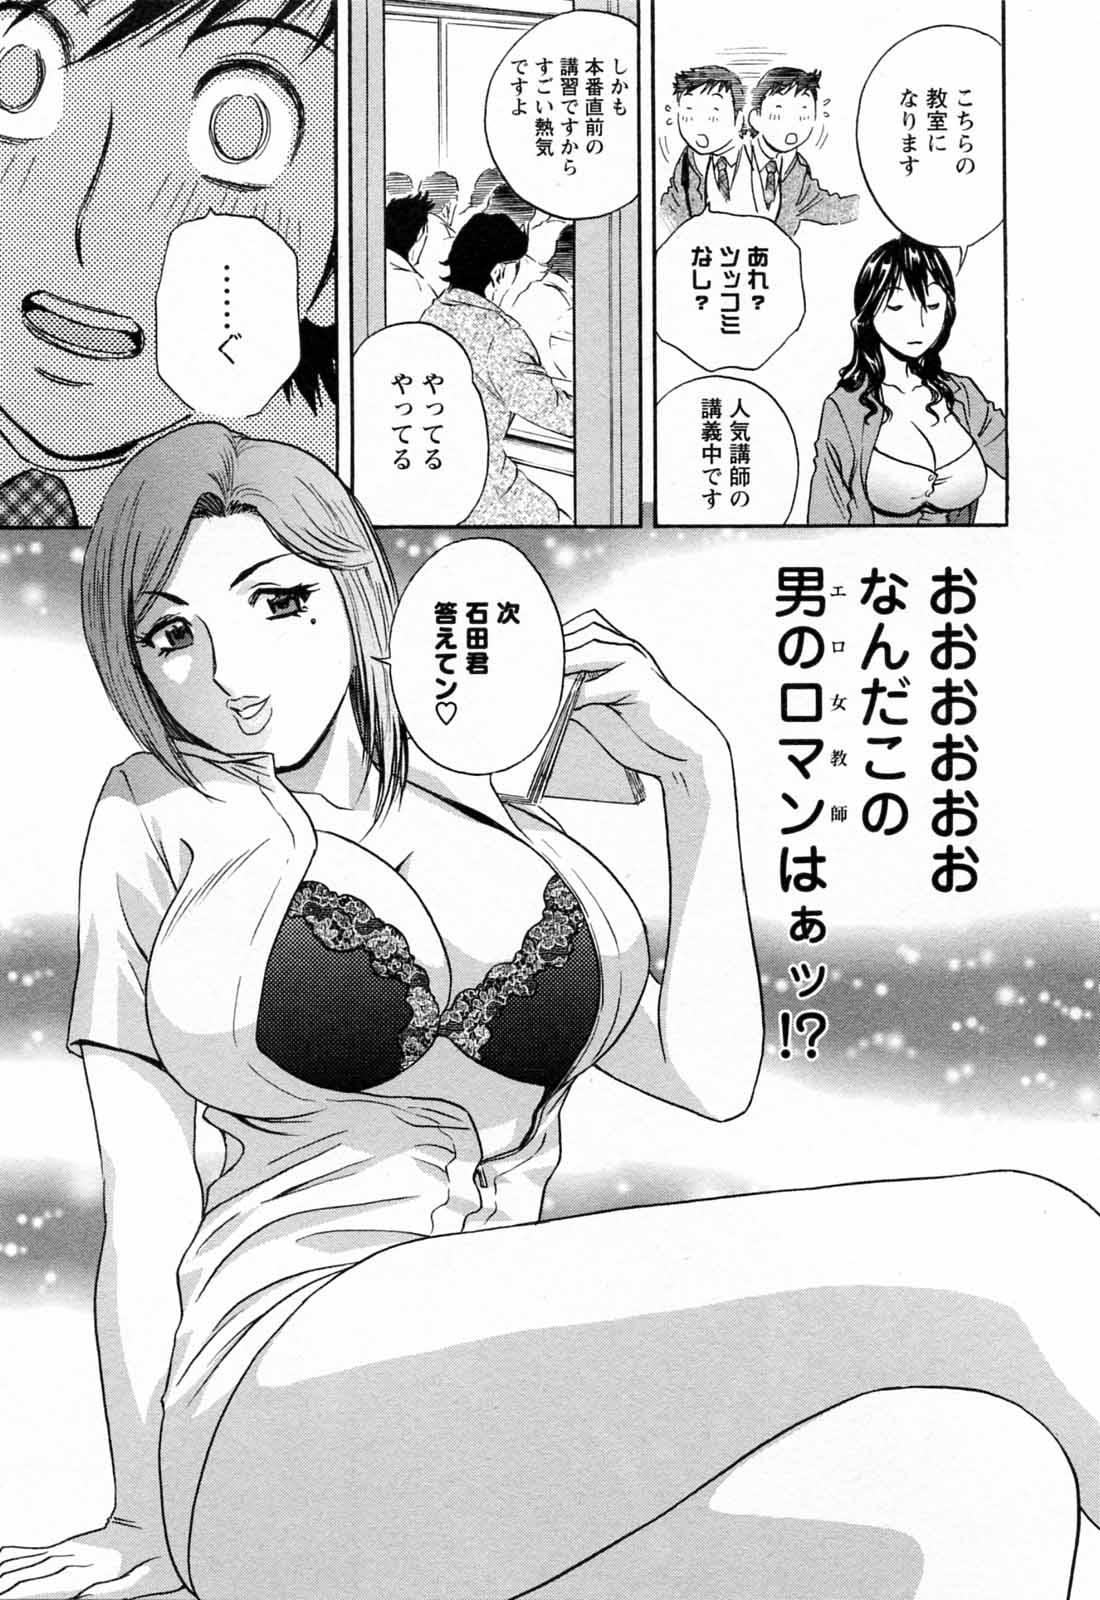 [Hidemaru] Mo-Retsu! Boin Sensei (Boing Boing Teacher) Vol.5 16